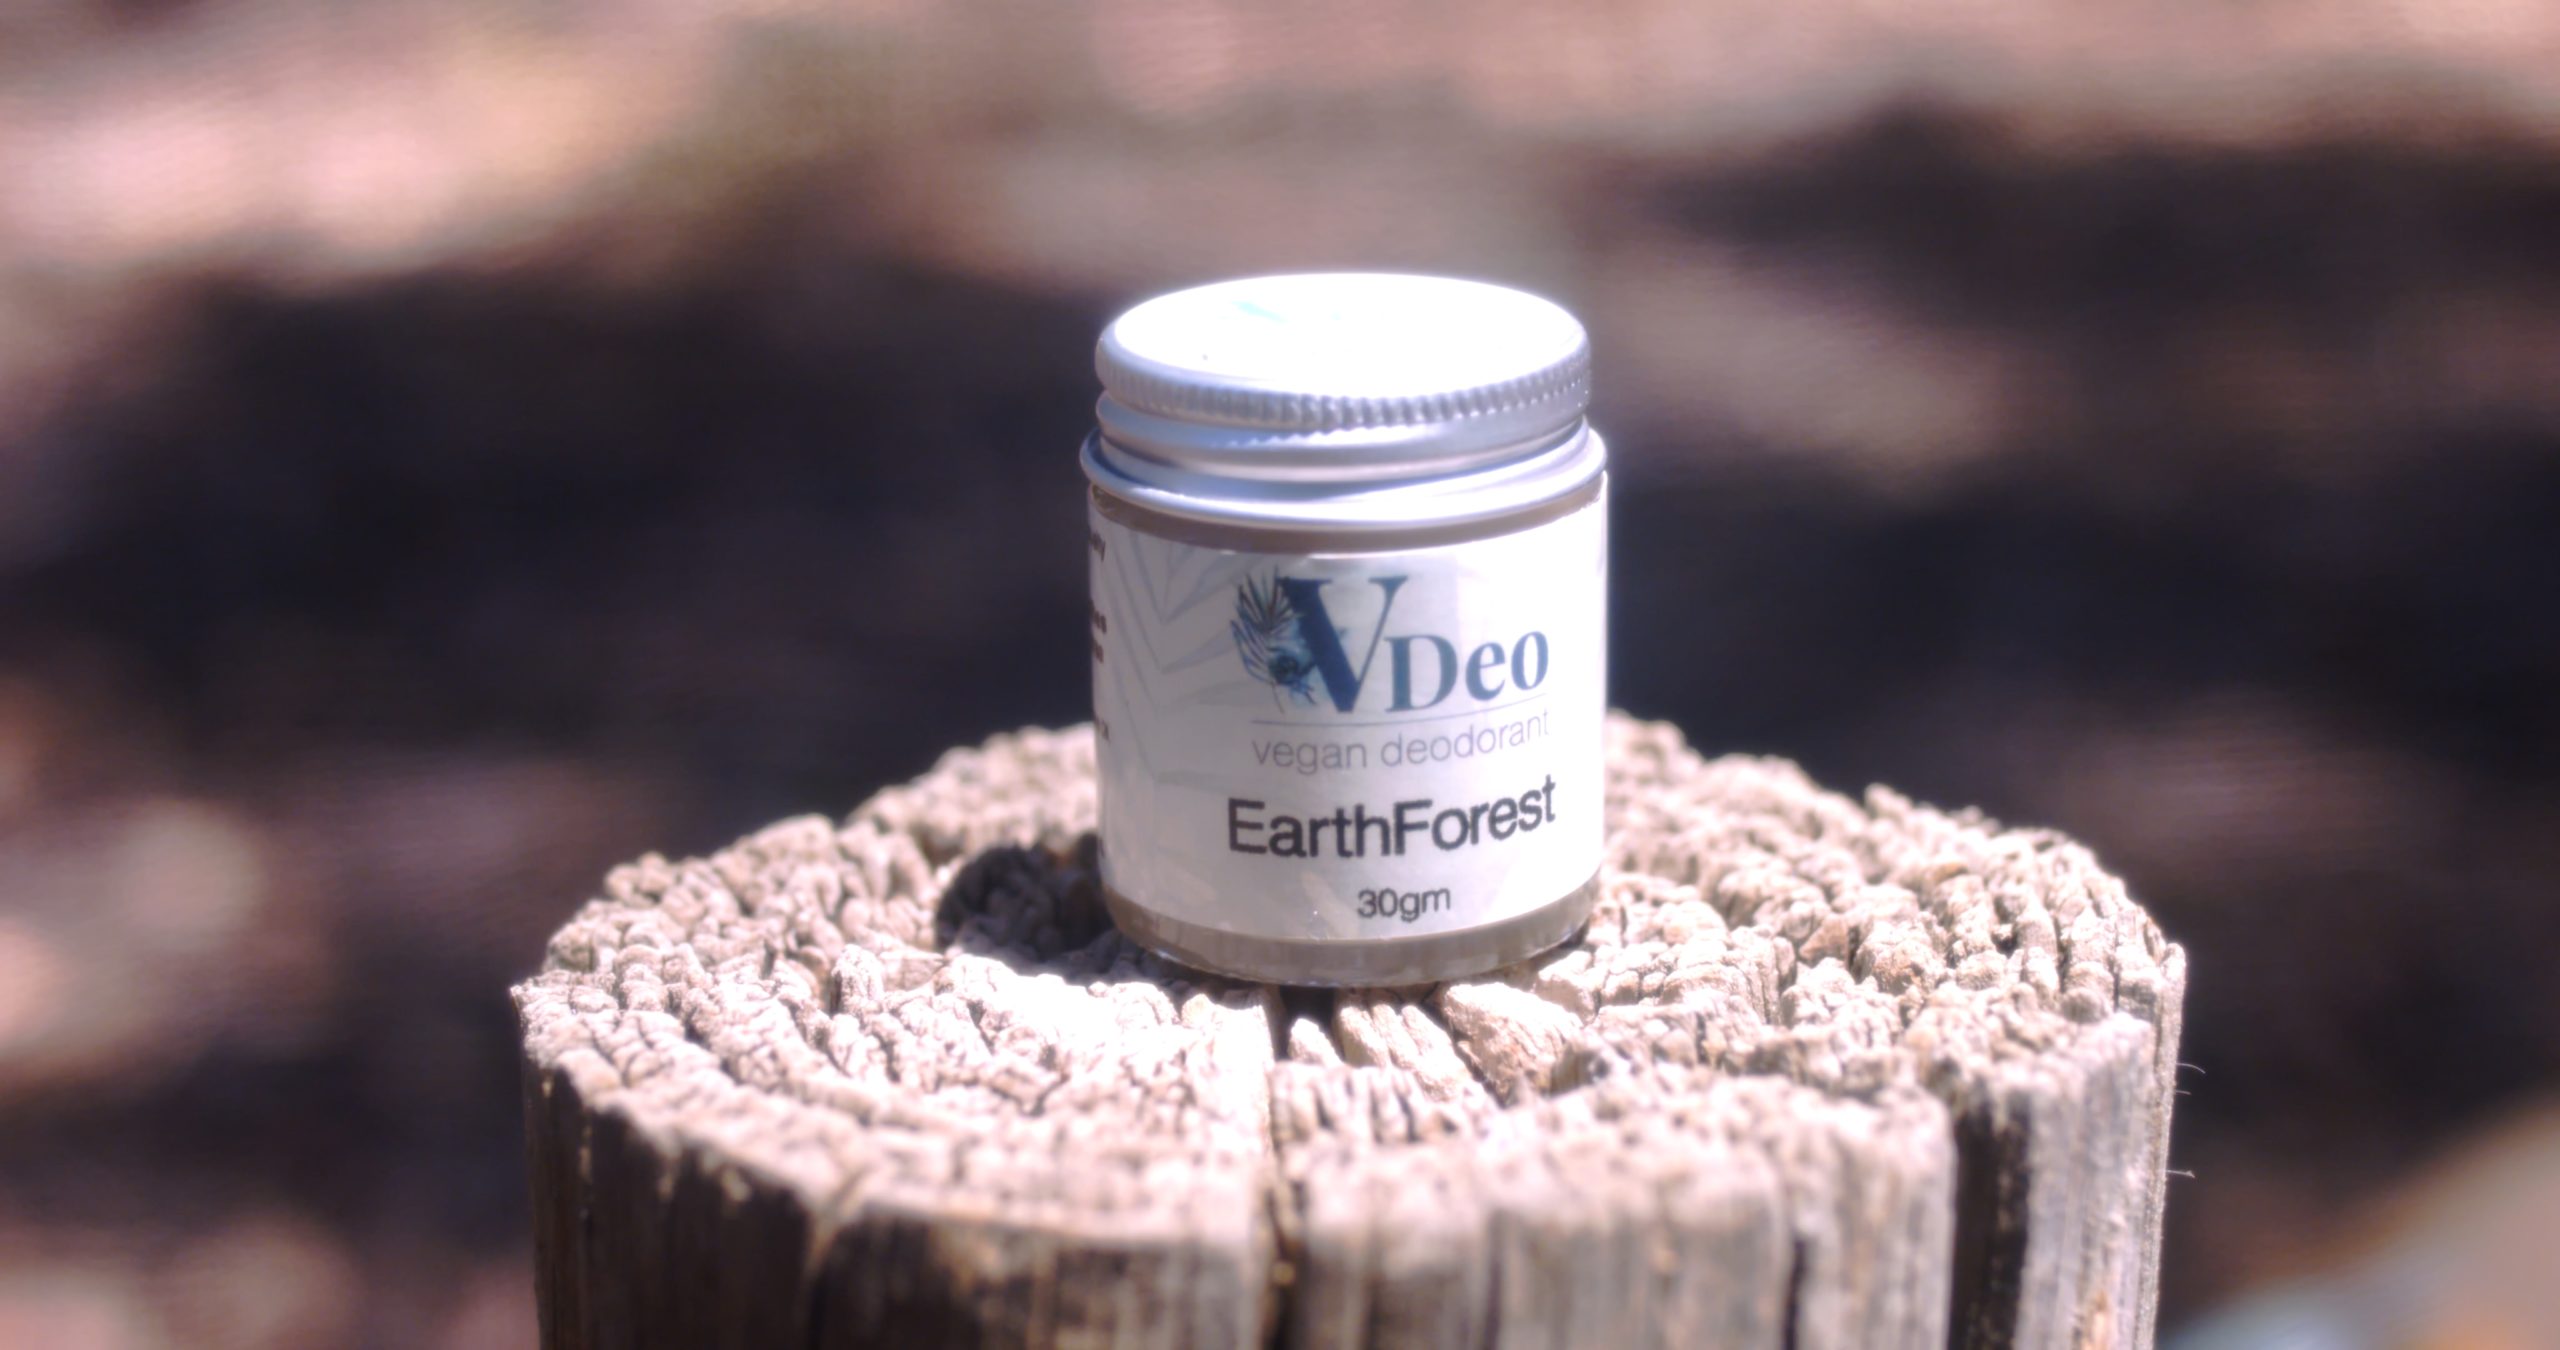 VDeo Vegan Deodorant EarthForest 30g